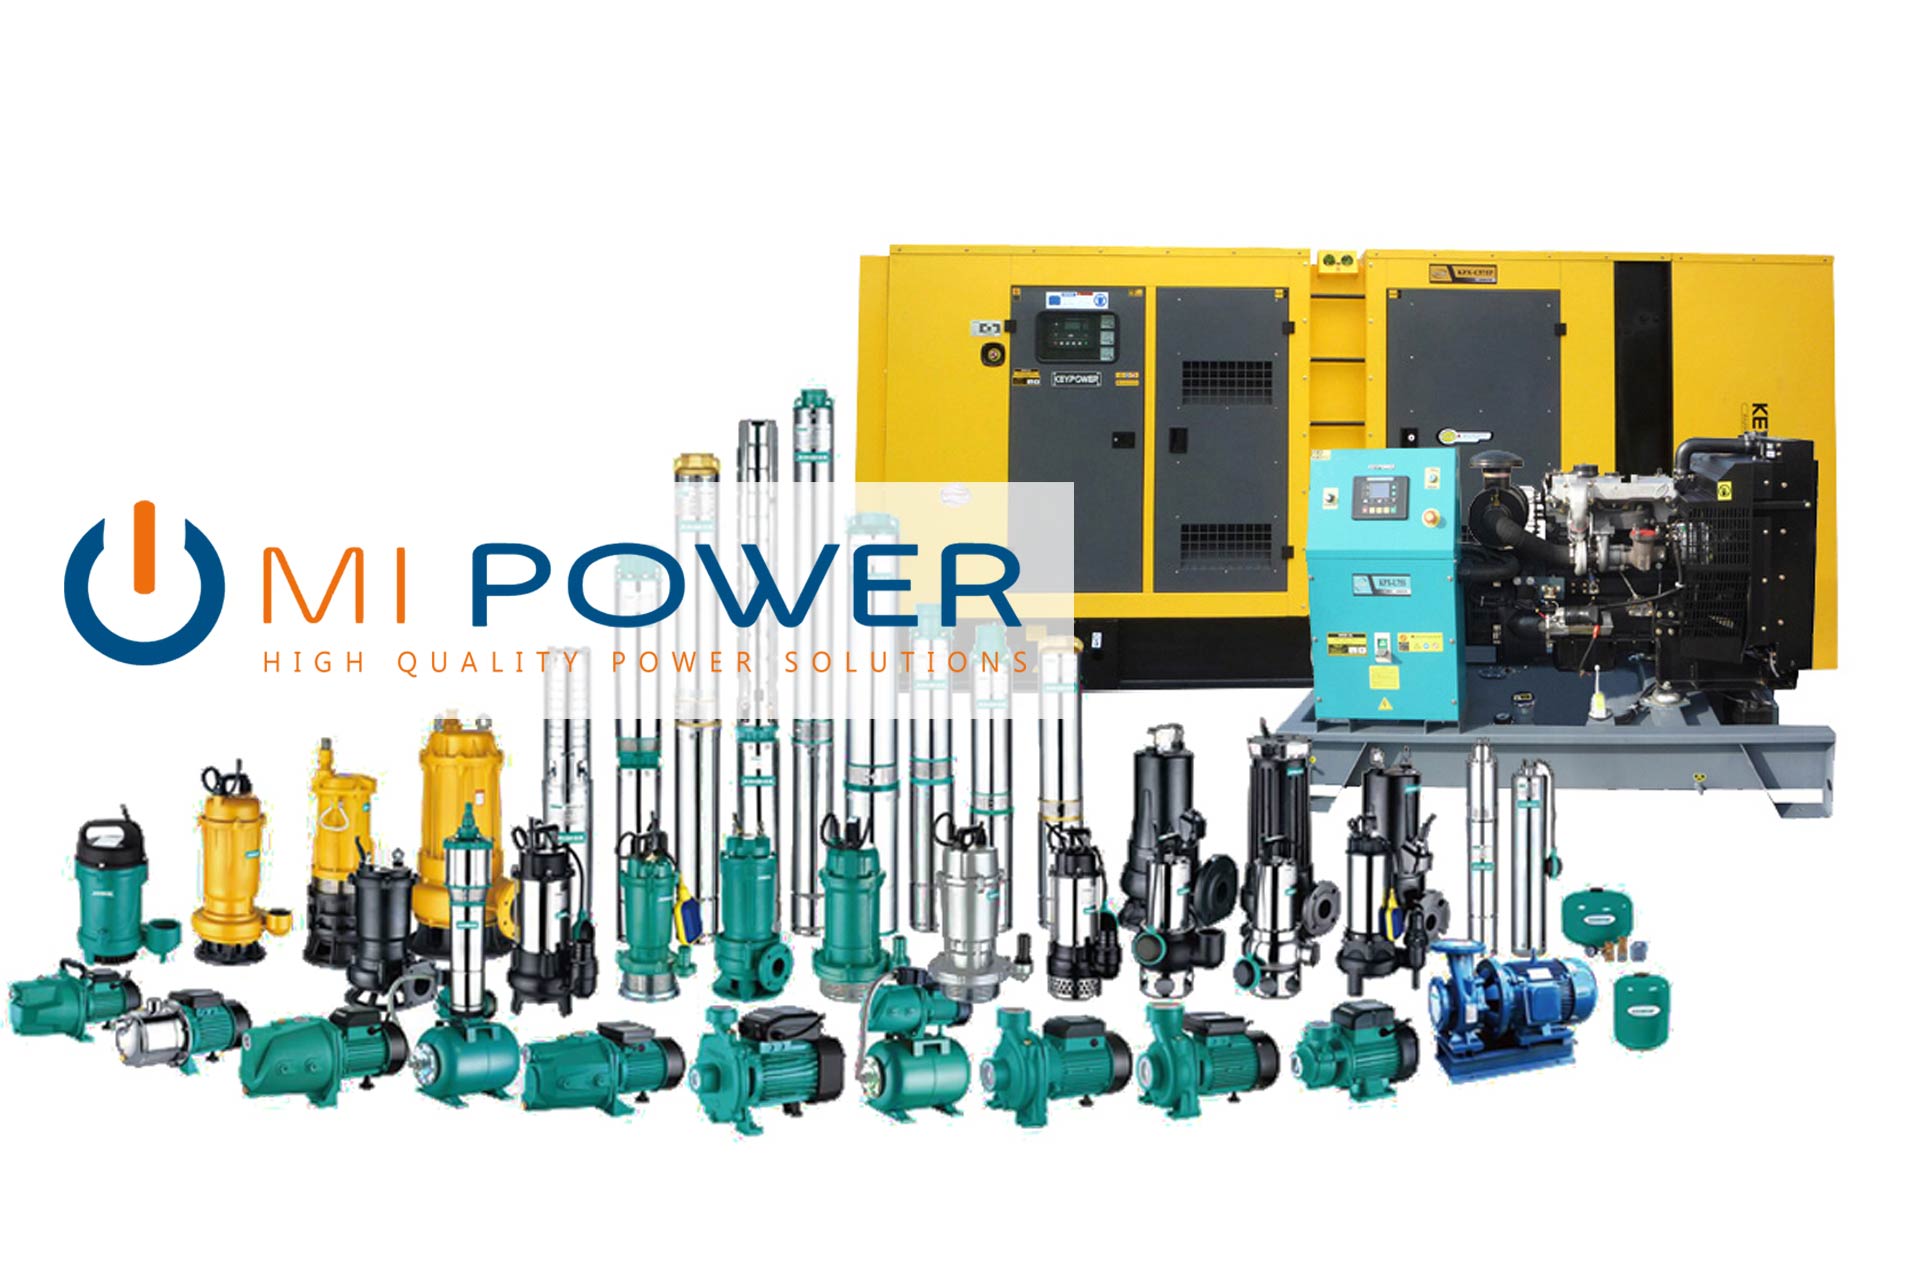 MiPower generators